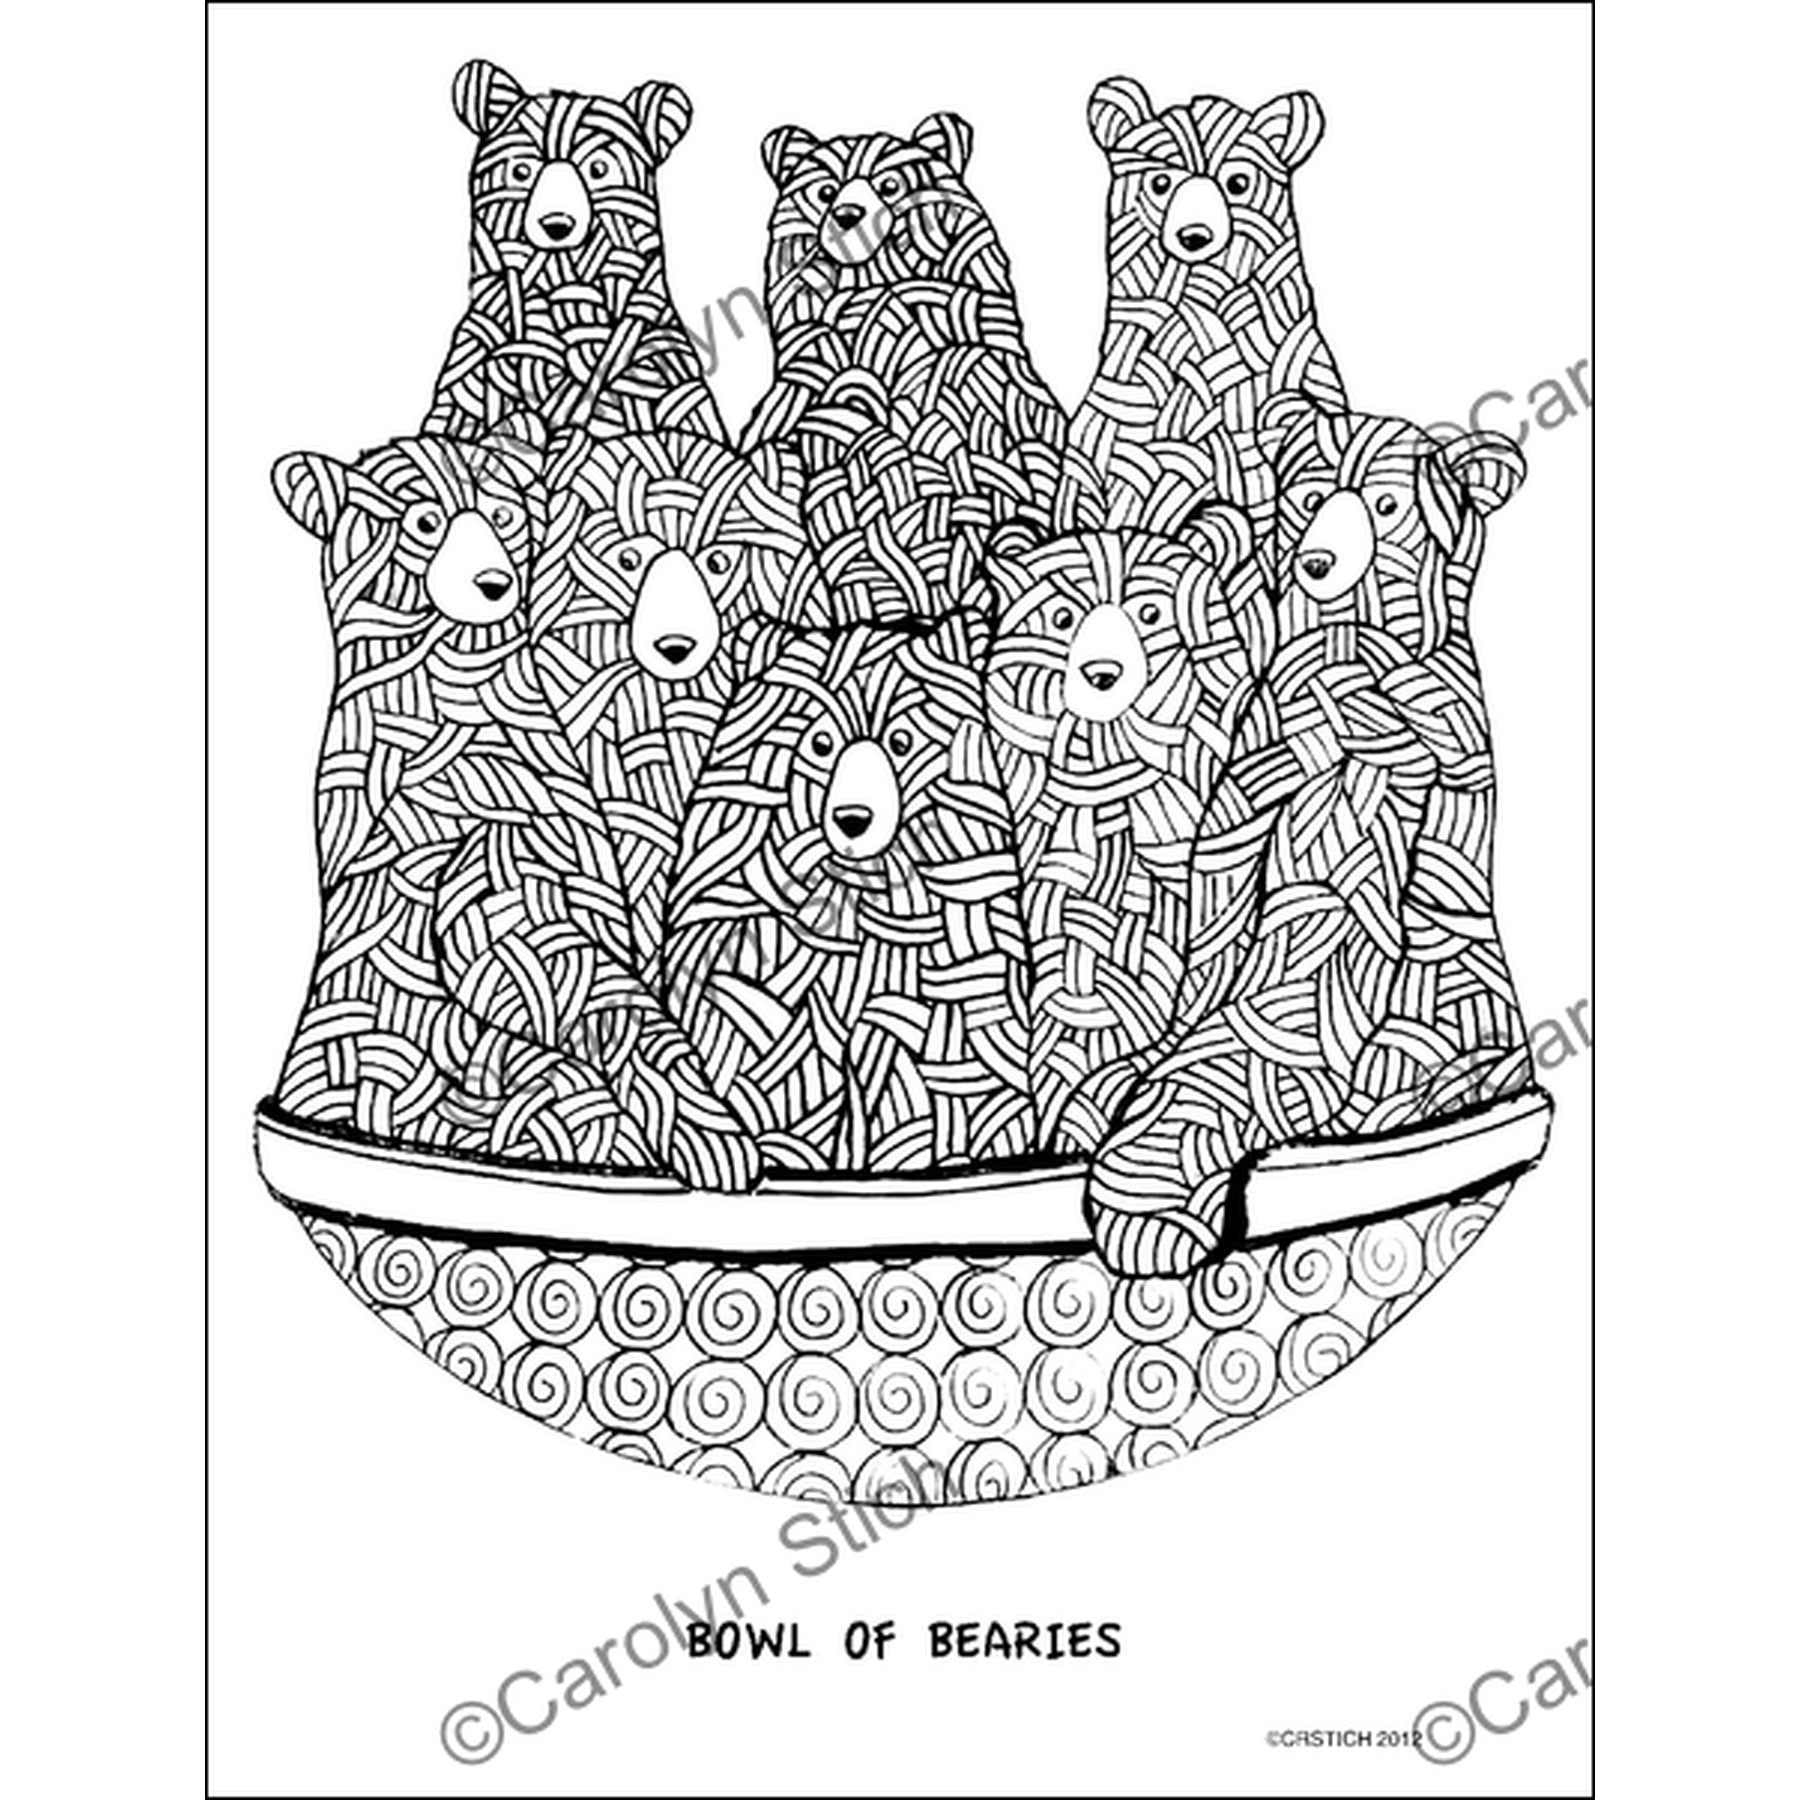 Bowl of Bearies, rug hooking pattern